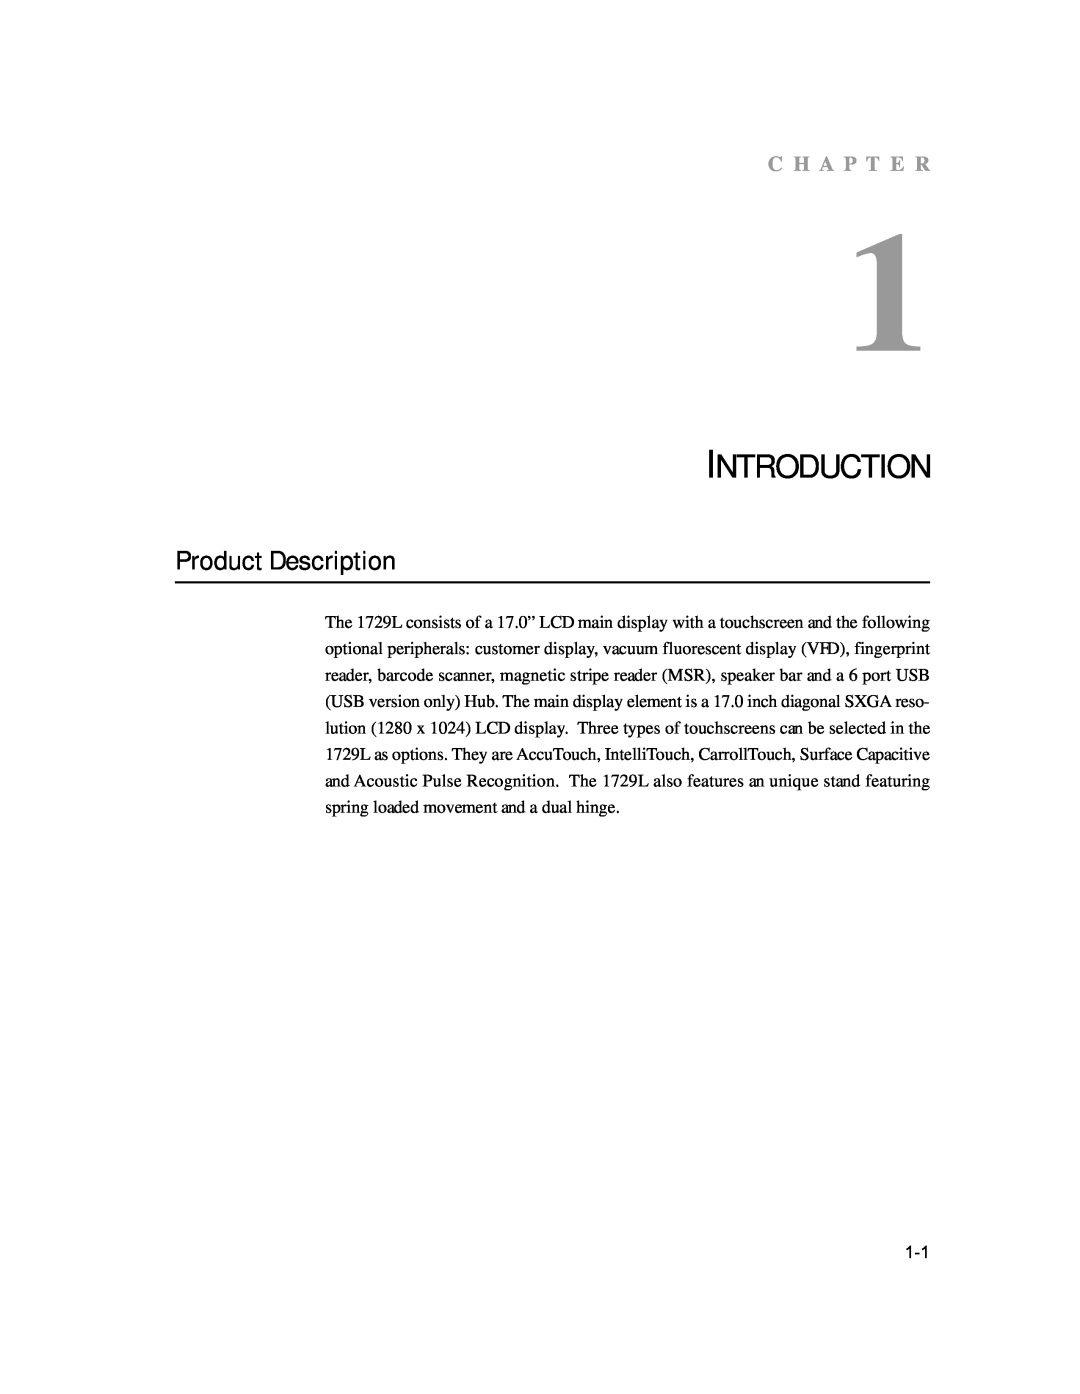 Elo TouchSystems 1729L manual Introduction, Product Description, C H A P T E R 